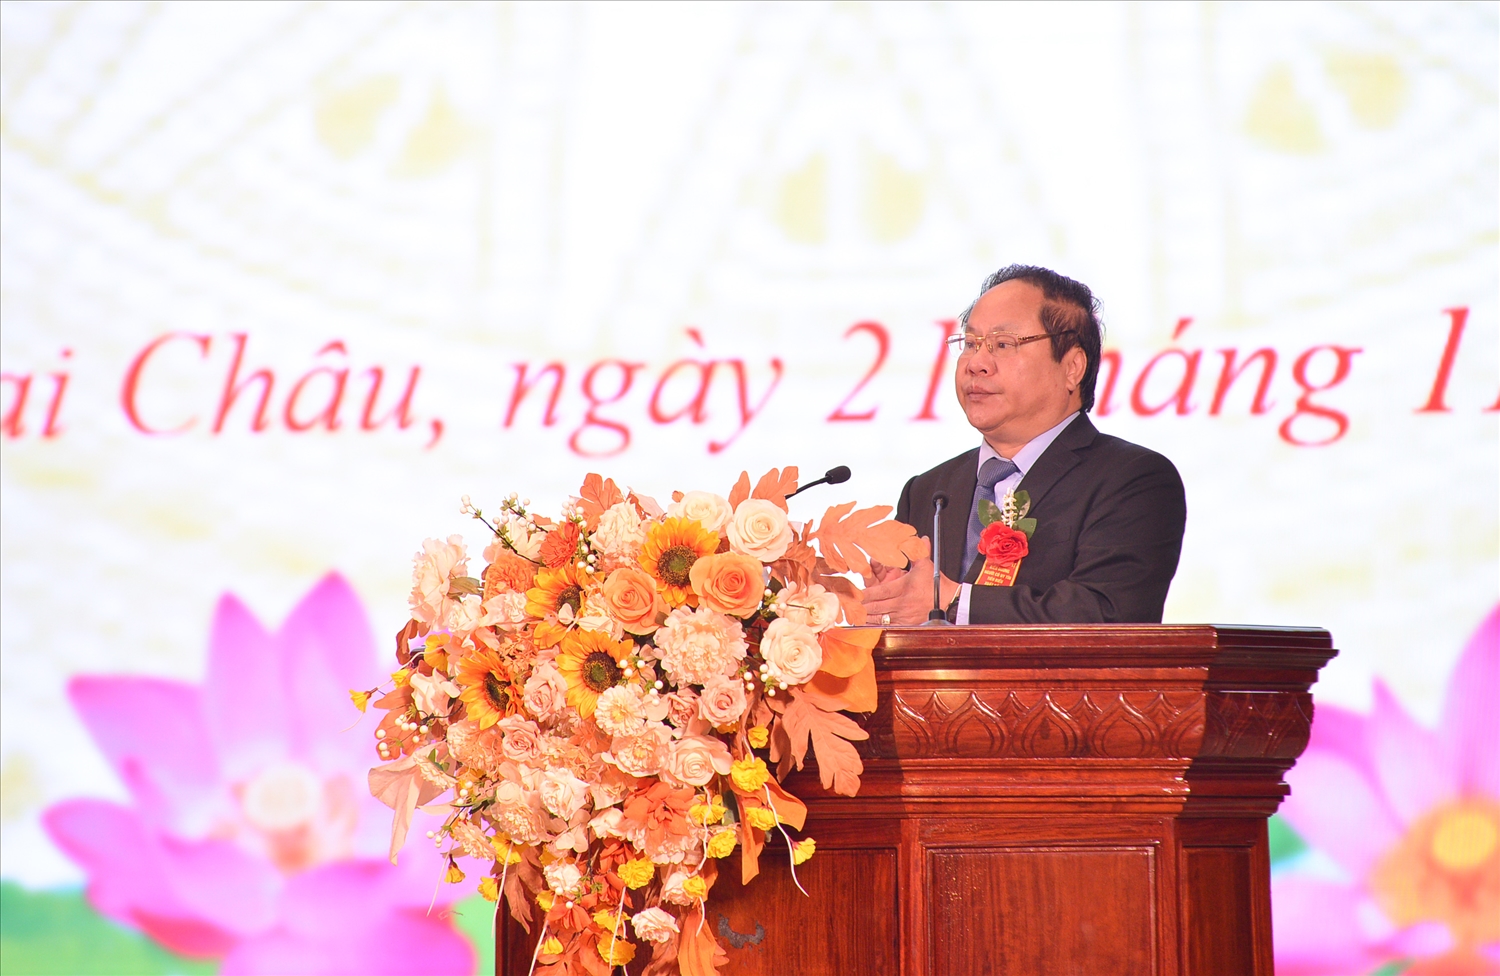 Đồng chí Tống Thanh Hải, Ủy viên Ban Thường vụ Tỉnh ủy, Phó Chủ tịch Thường trực UBND tỉnh Lai Châu khai mạc Hội nghị.